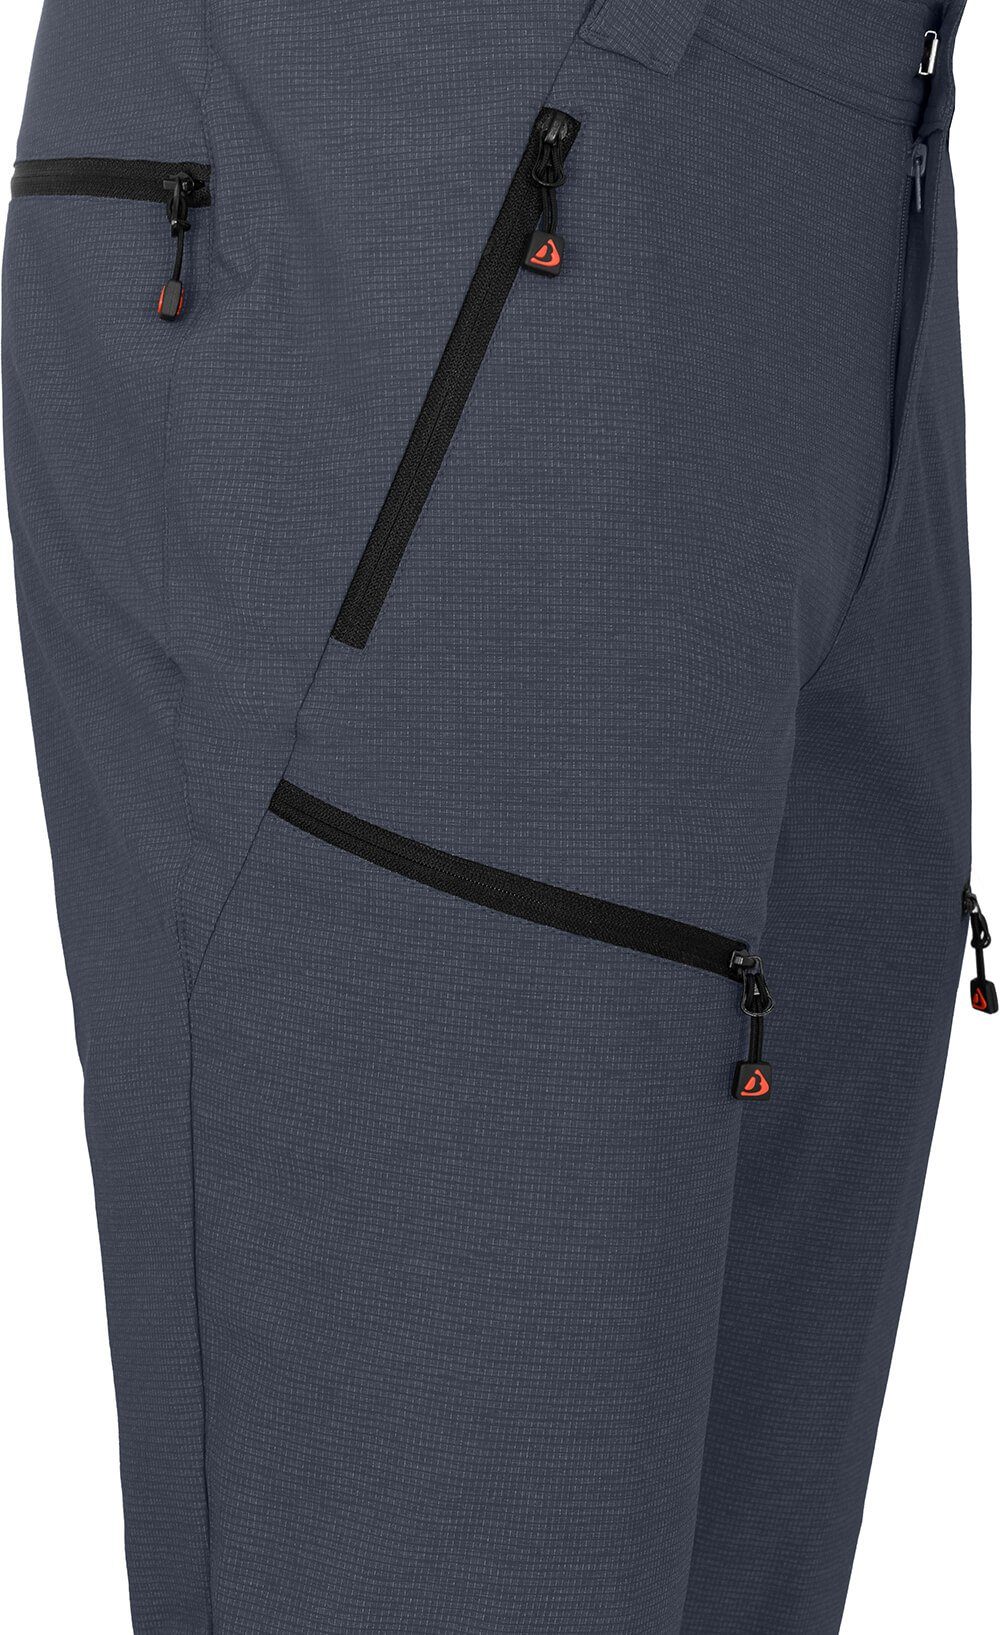 Doppel Zip-off-Hose grau/blau robust T-ZIPP Bergson elastisch, Wanderhose, Kurzgrößen, Zipp-Off LEBIKO mit Herren